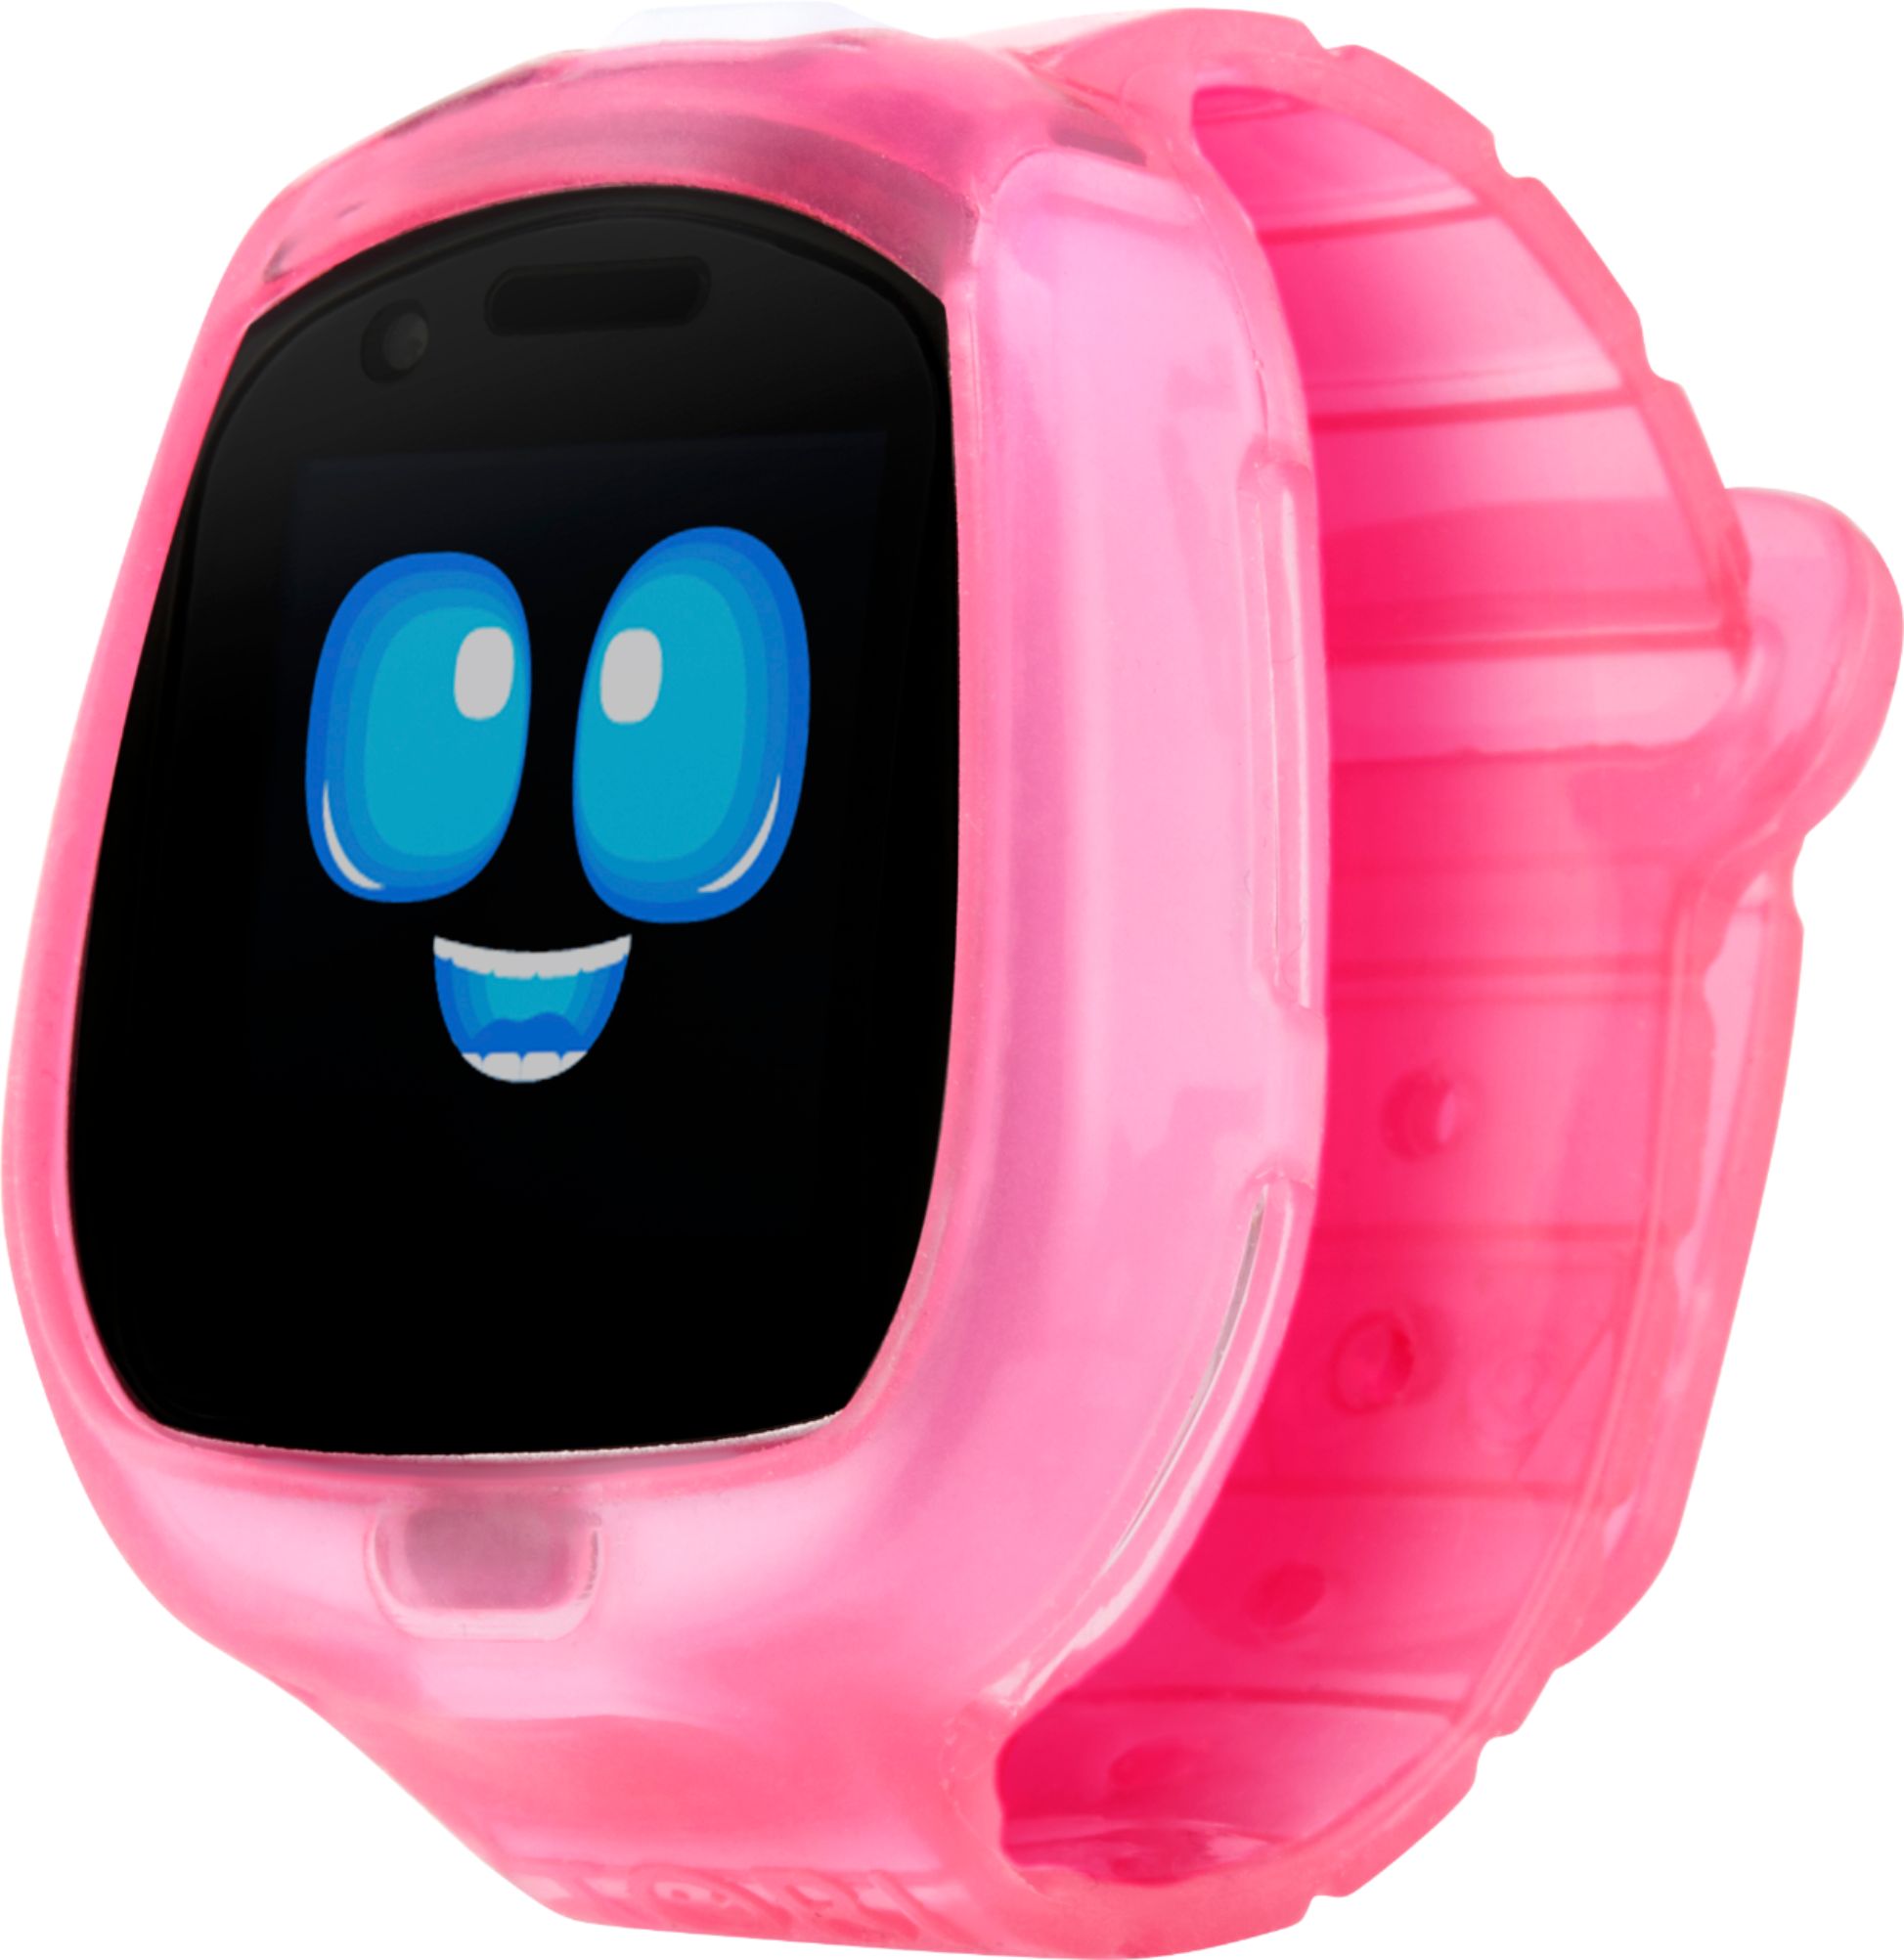 Little Tikes - Tobi Smartwatch + Robot